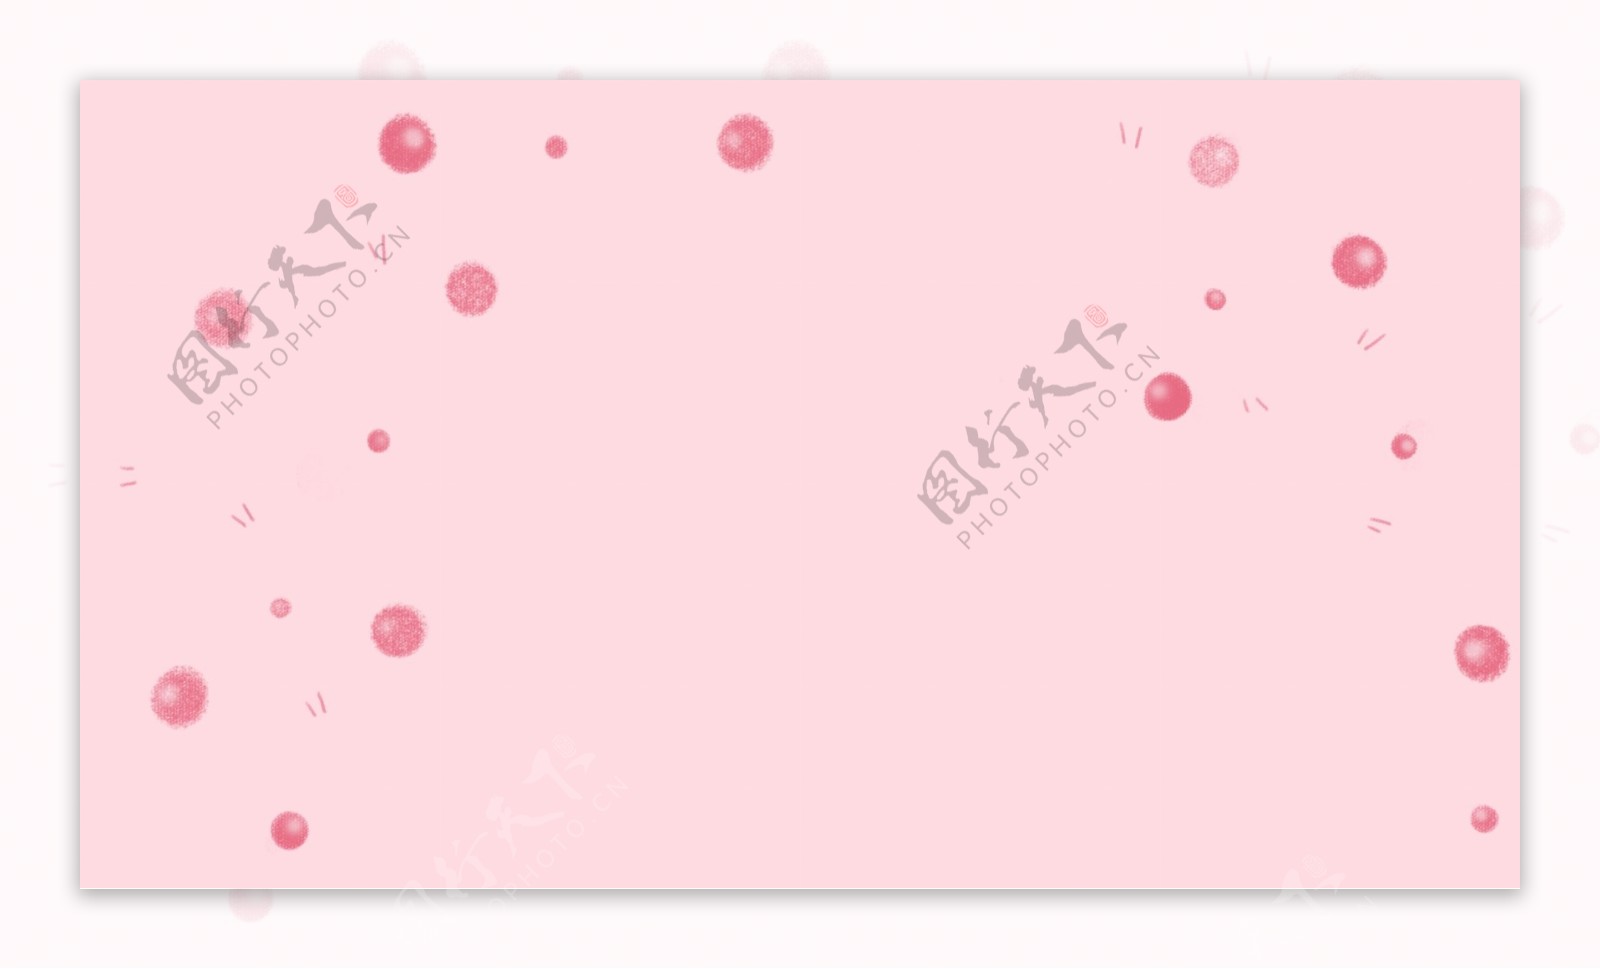 简约粉色泡泡通用背景素材